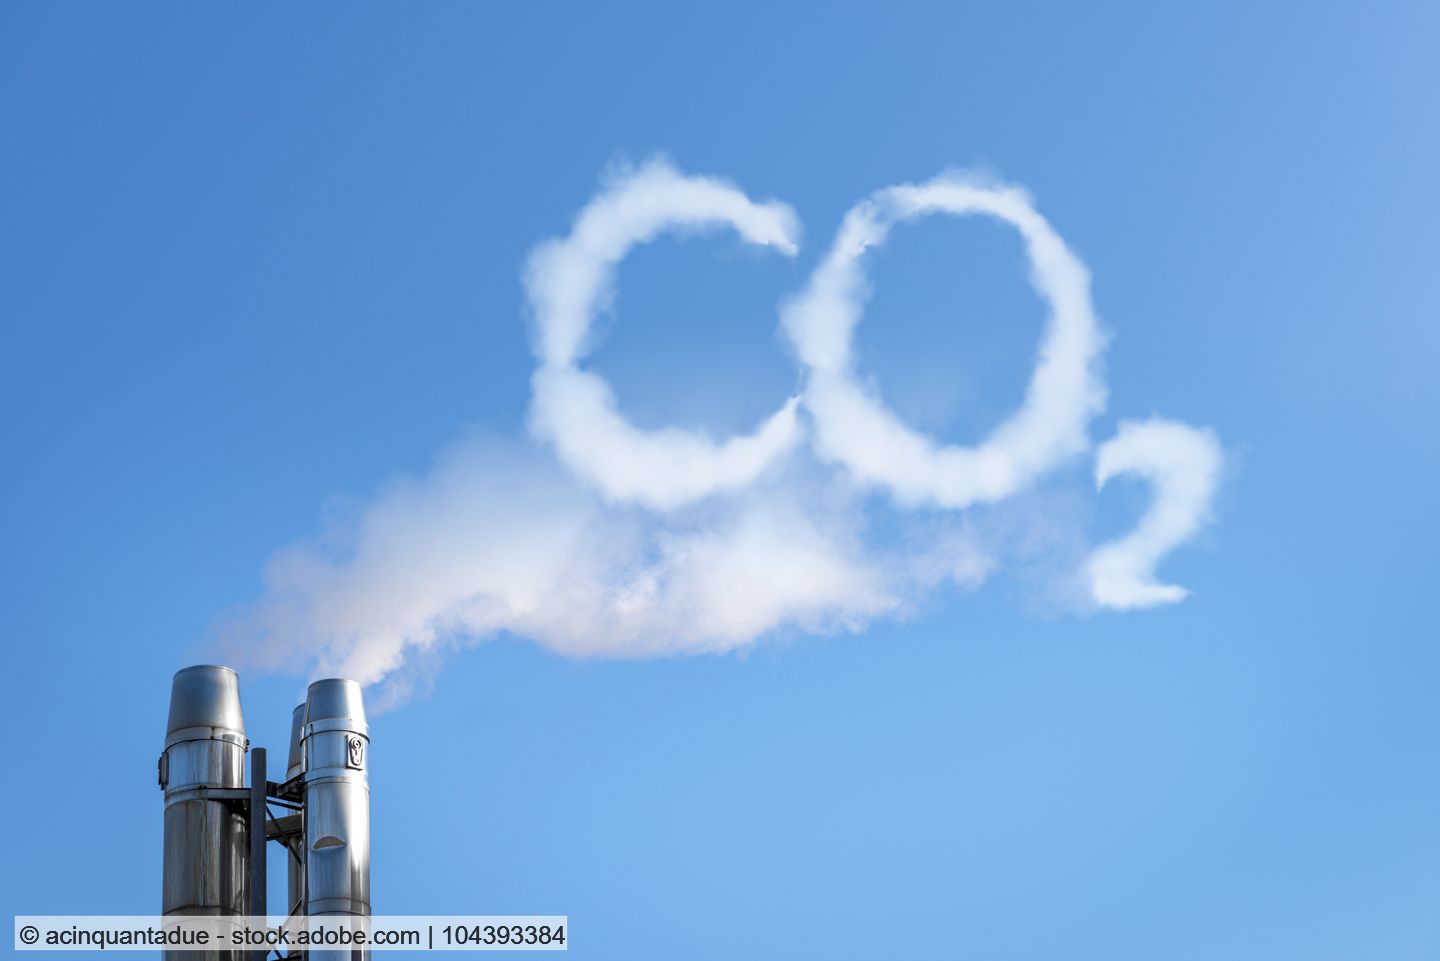 BEHG beschlossen: CO2-Preis für Müllverbrennung weiter offen